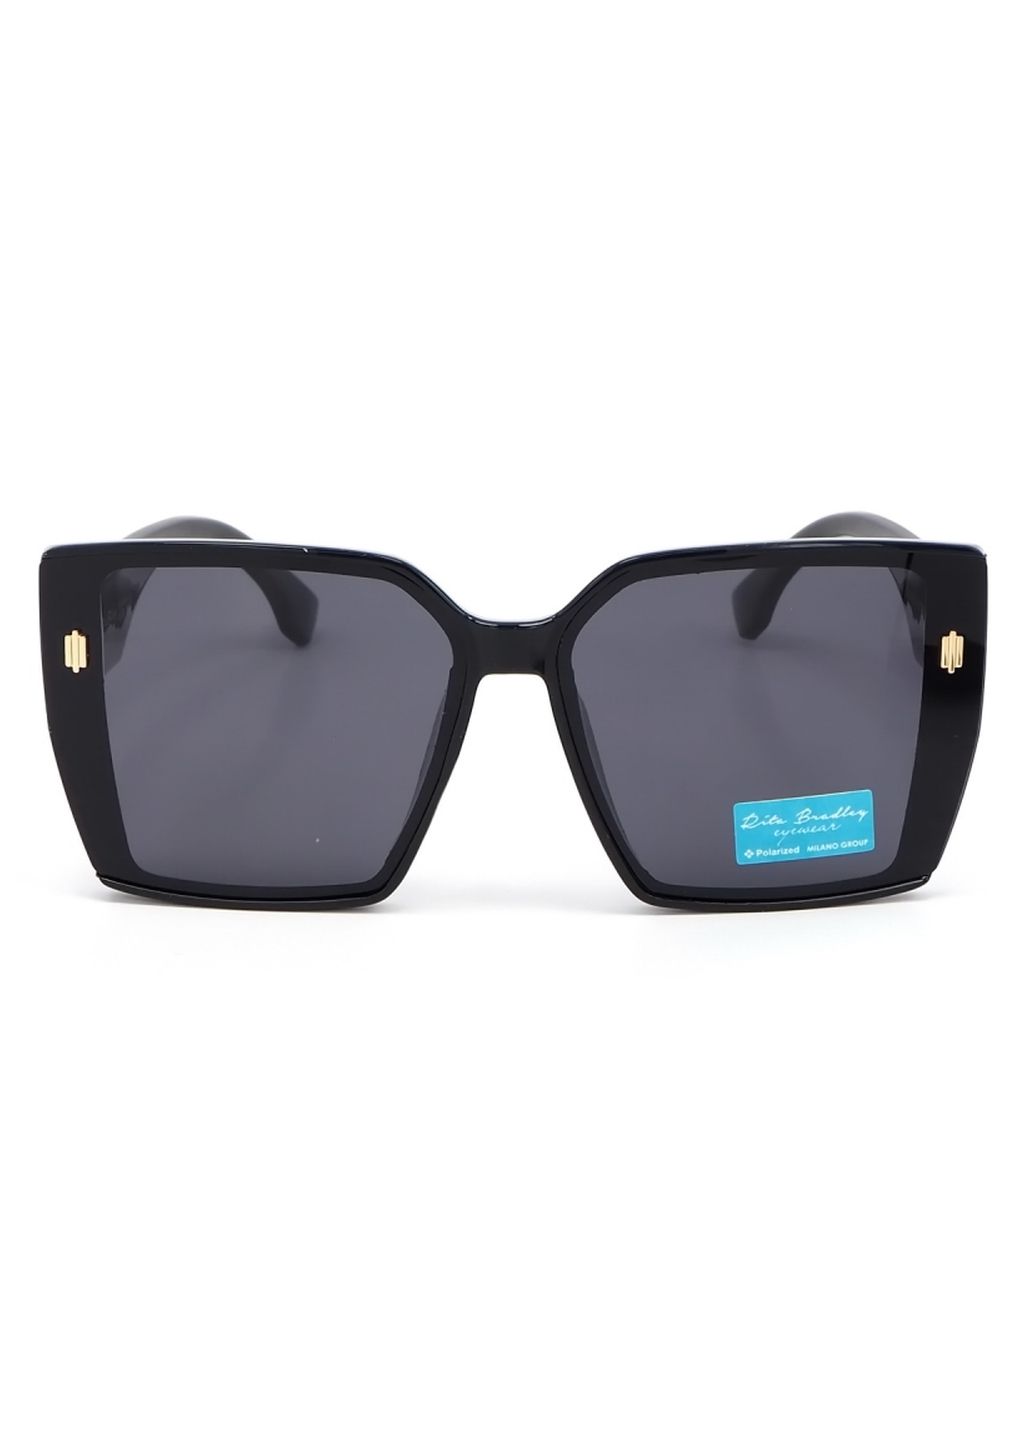 Купить Женские солнцезащитные очки Rita Bradley с поляризацией RB727 112057 в интернет-магазине